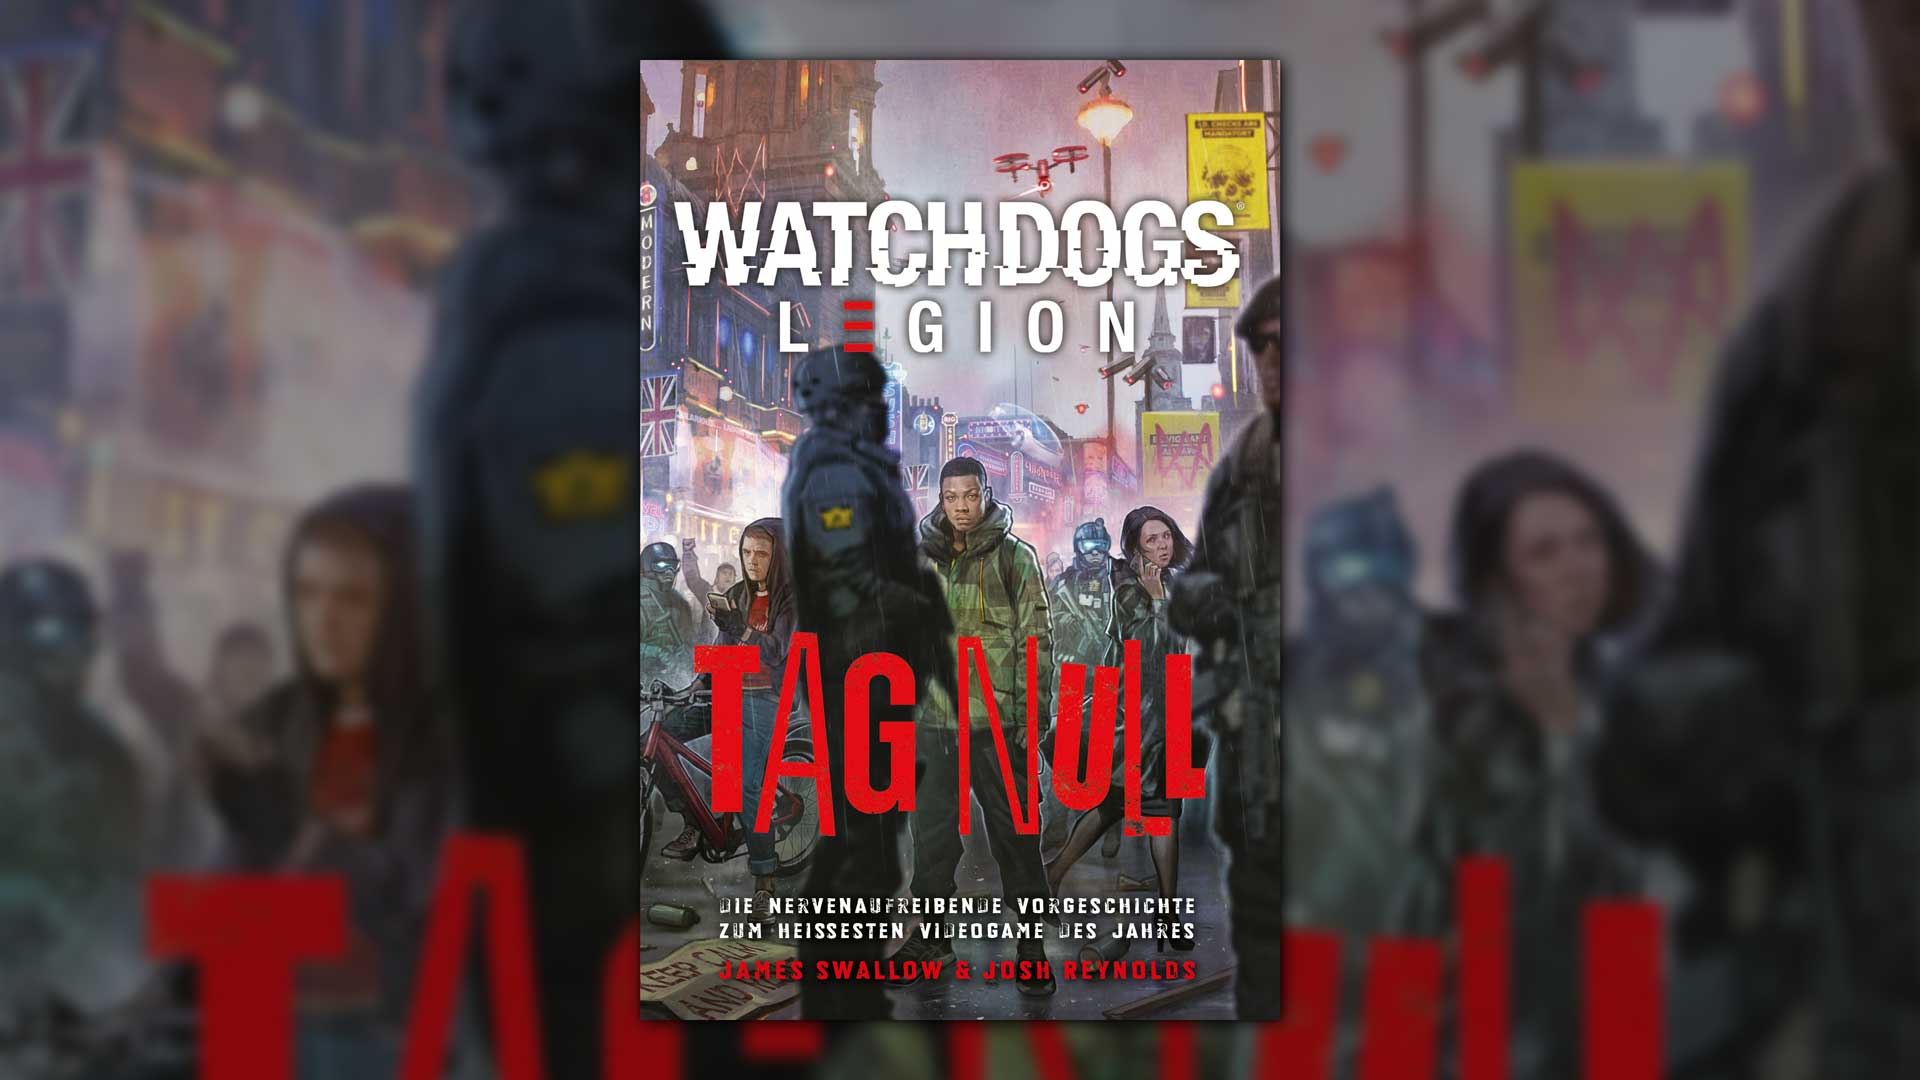 WatchdogsLegion TagNull rgb babt